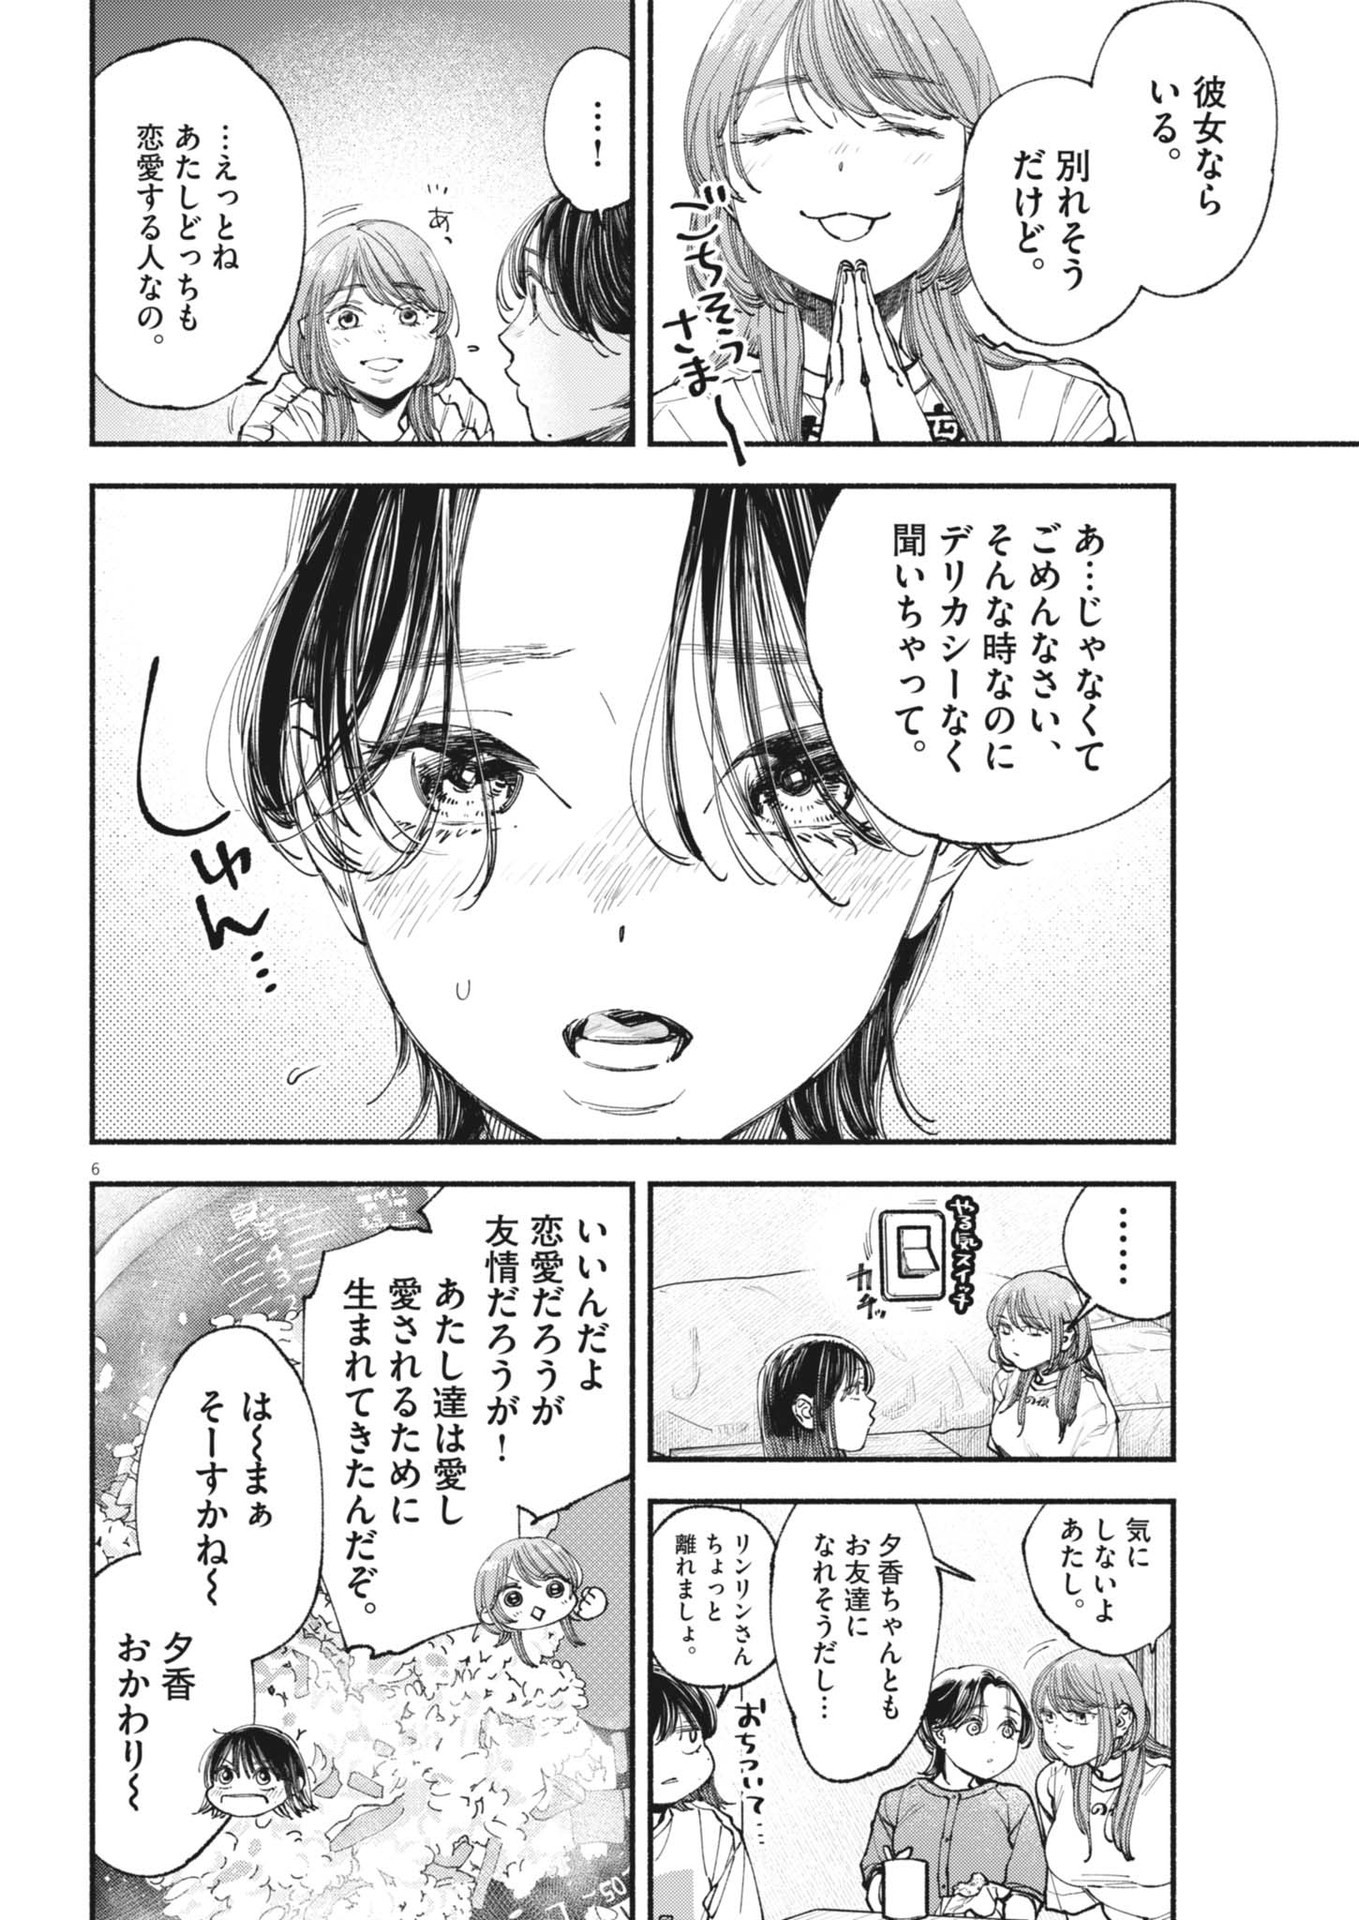 Konoyo wa Tatakau Kachi ga Aru  - Chapter 26 - Page 6